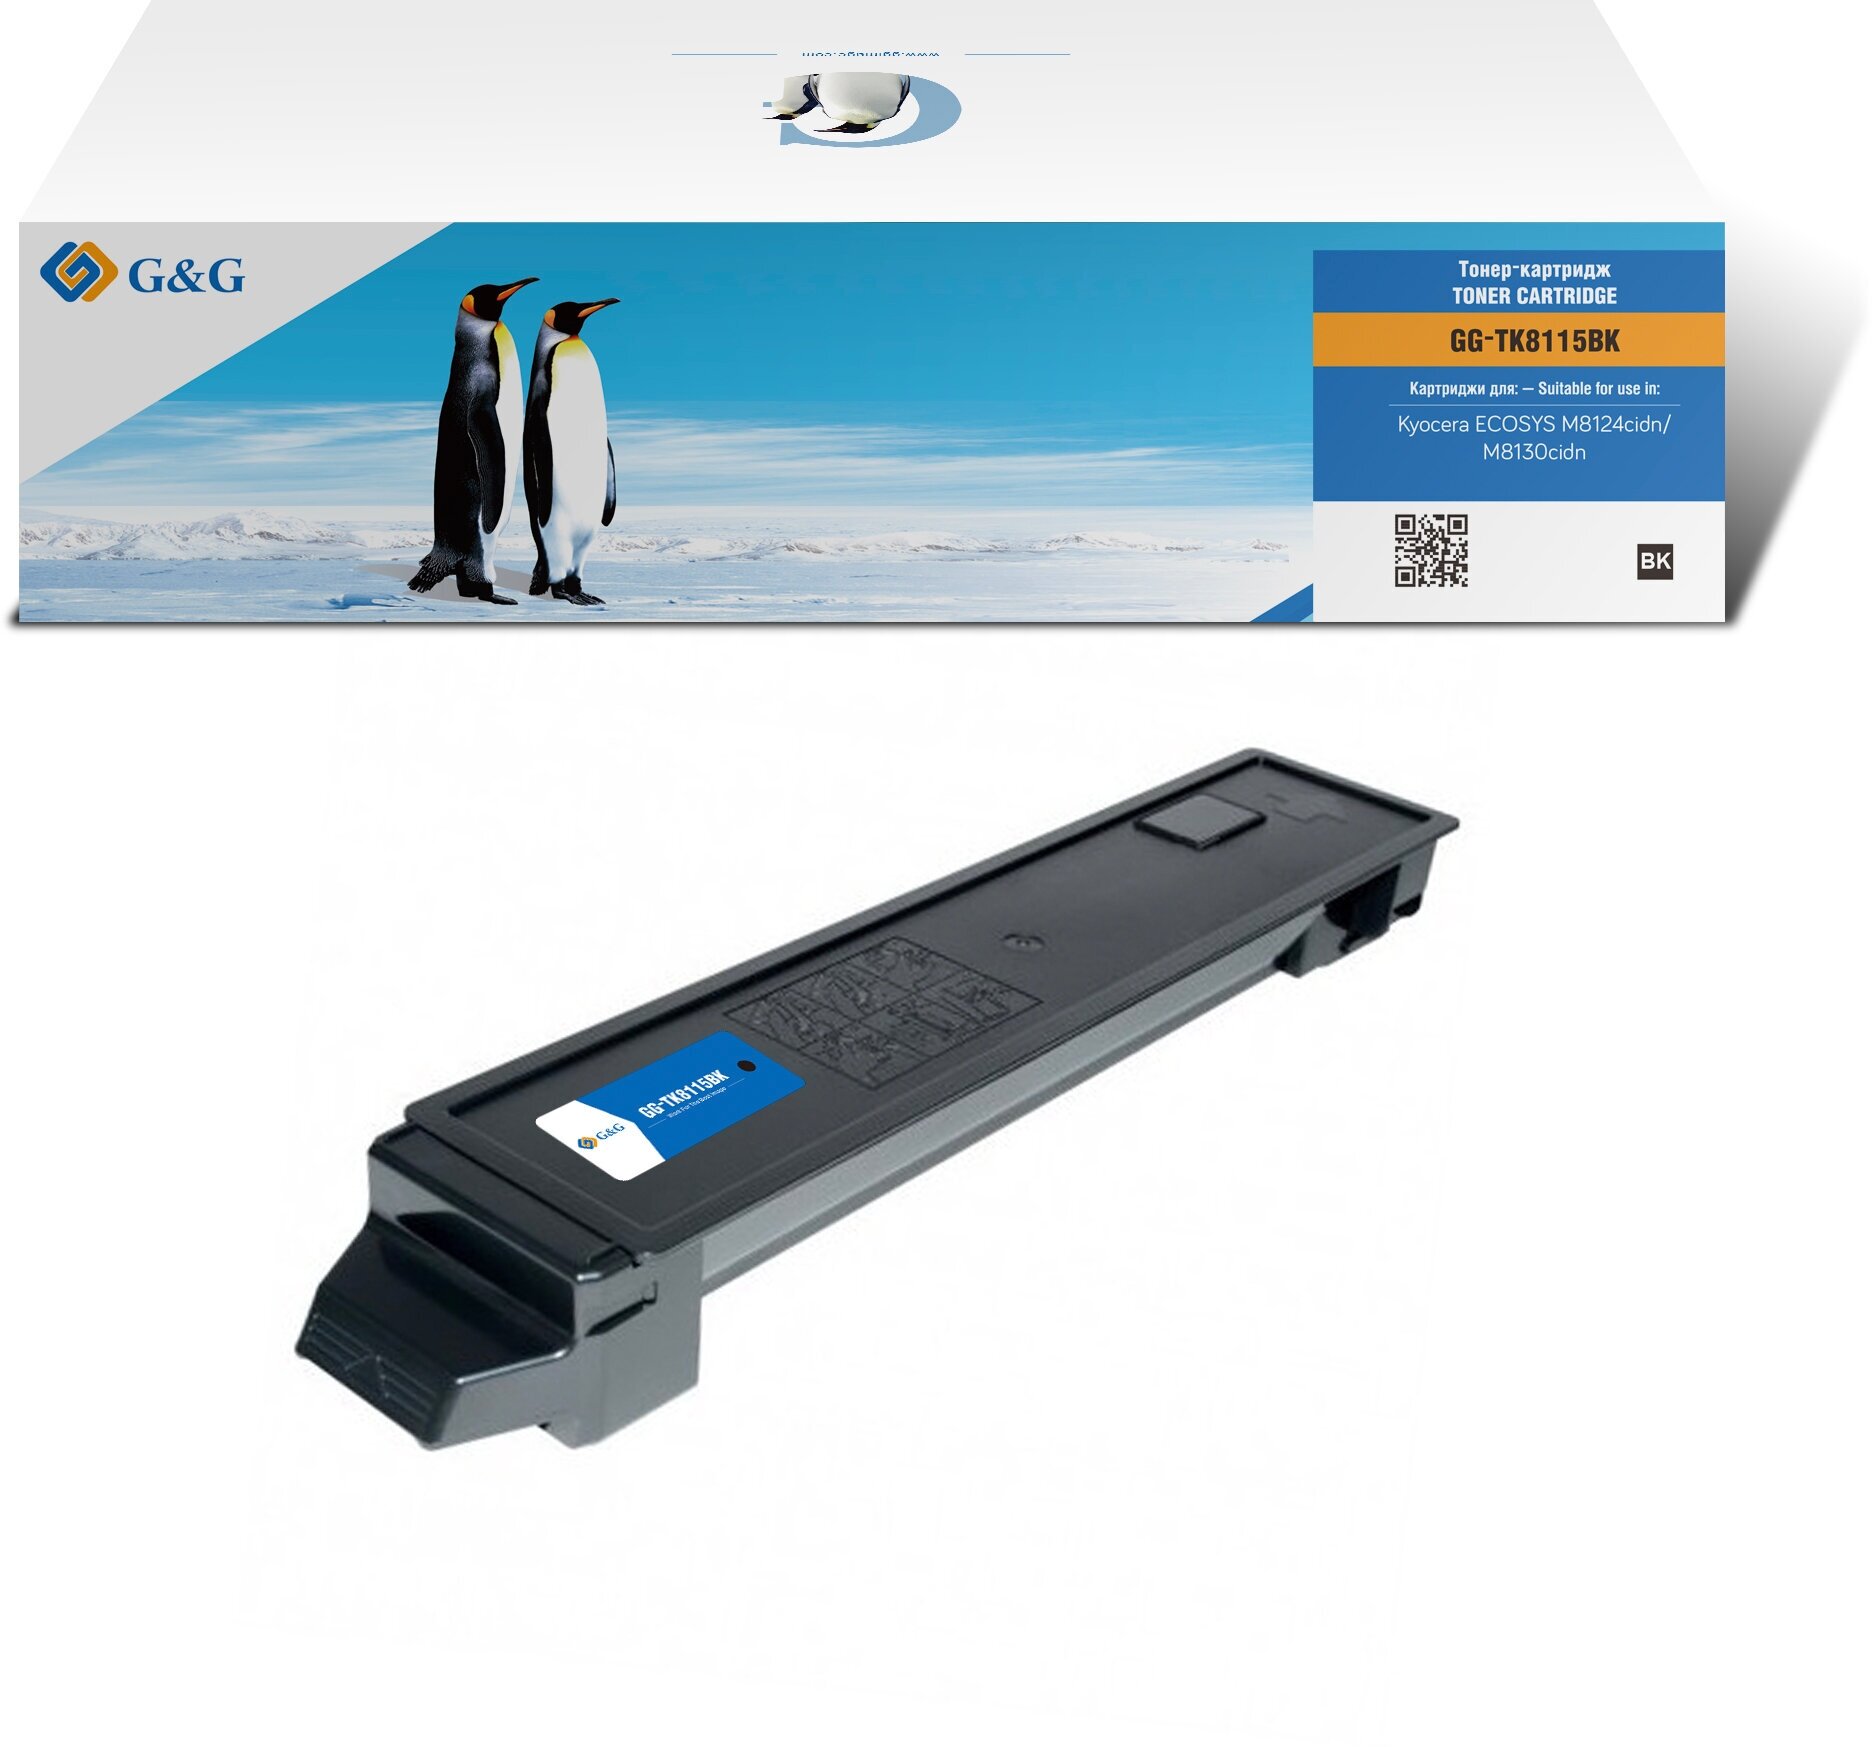 G&G toner cartridge for Kyocera M8124cidn/M8130cidn black 12 000 pages with chip TK-8115BK 1T02P30NL0